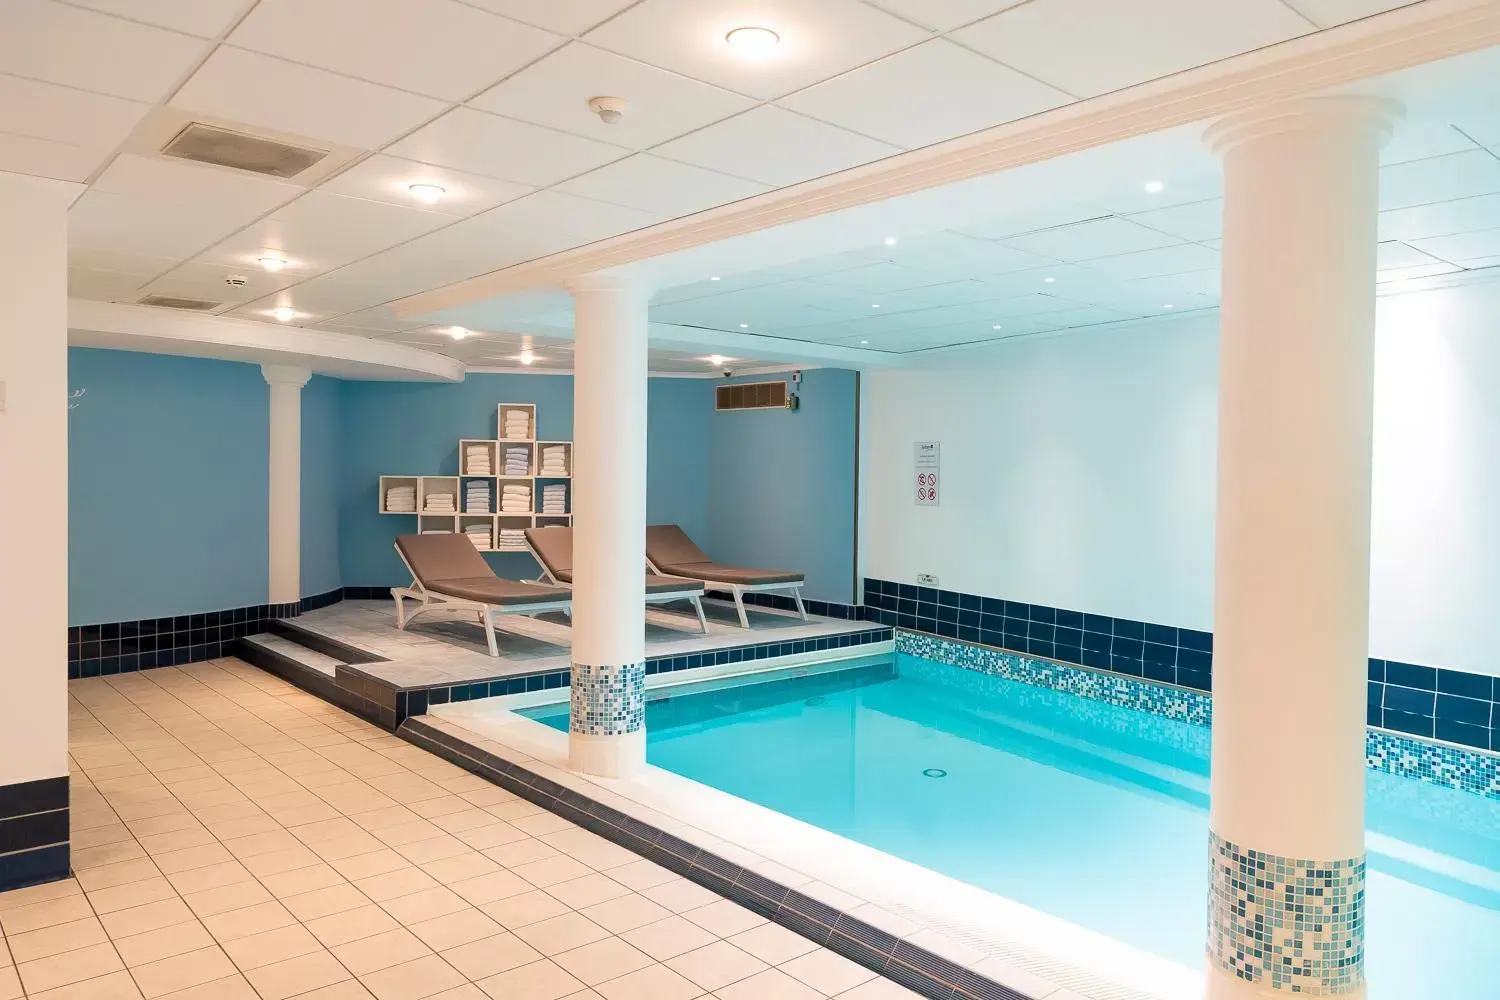 Swimming Pool in Van der Valk Palace Hotel Noordwijk